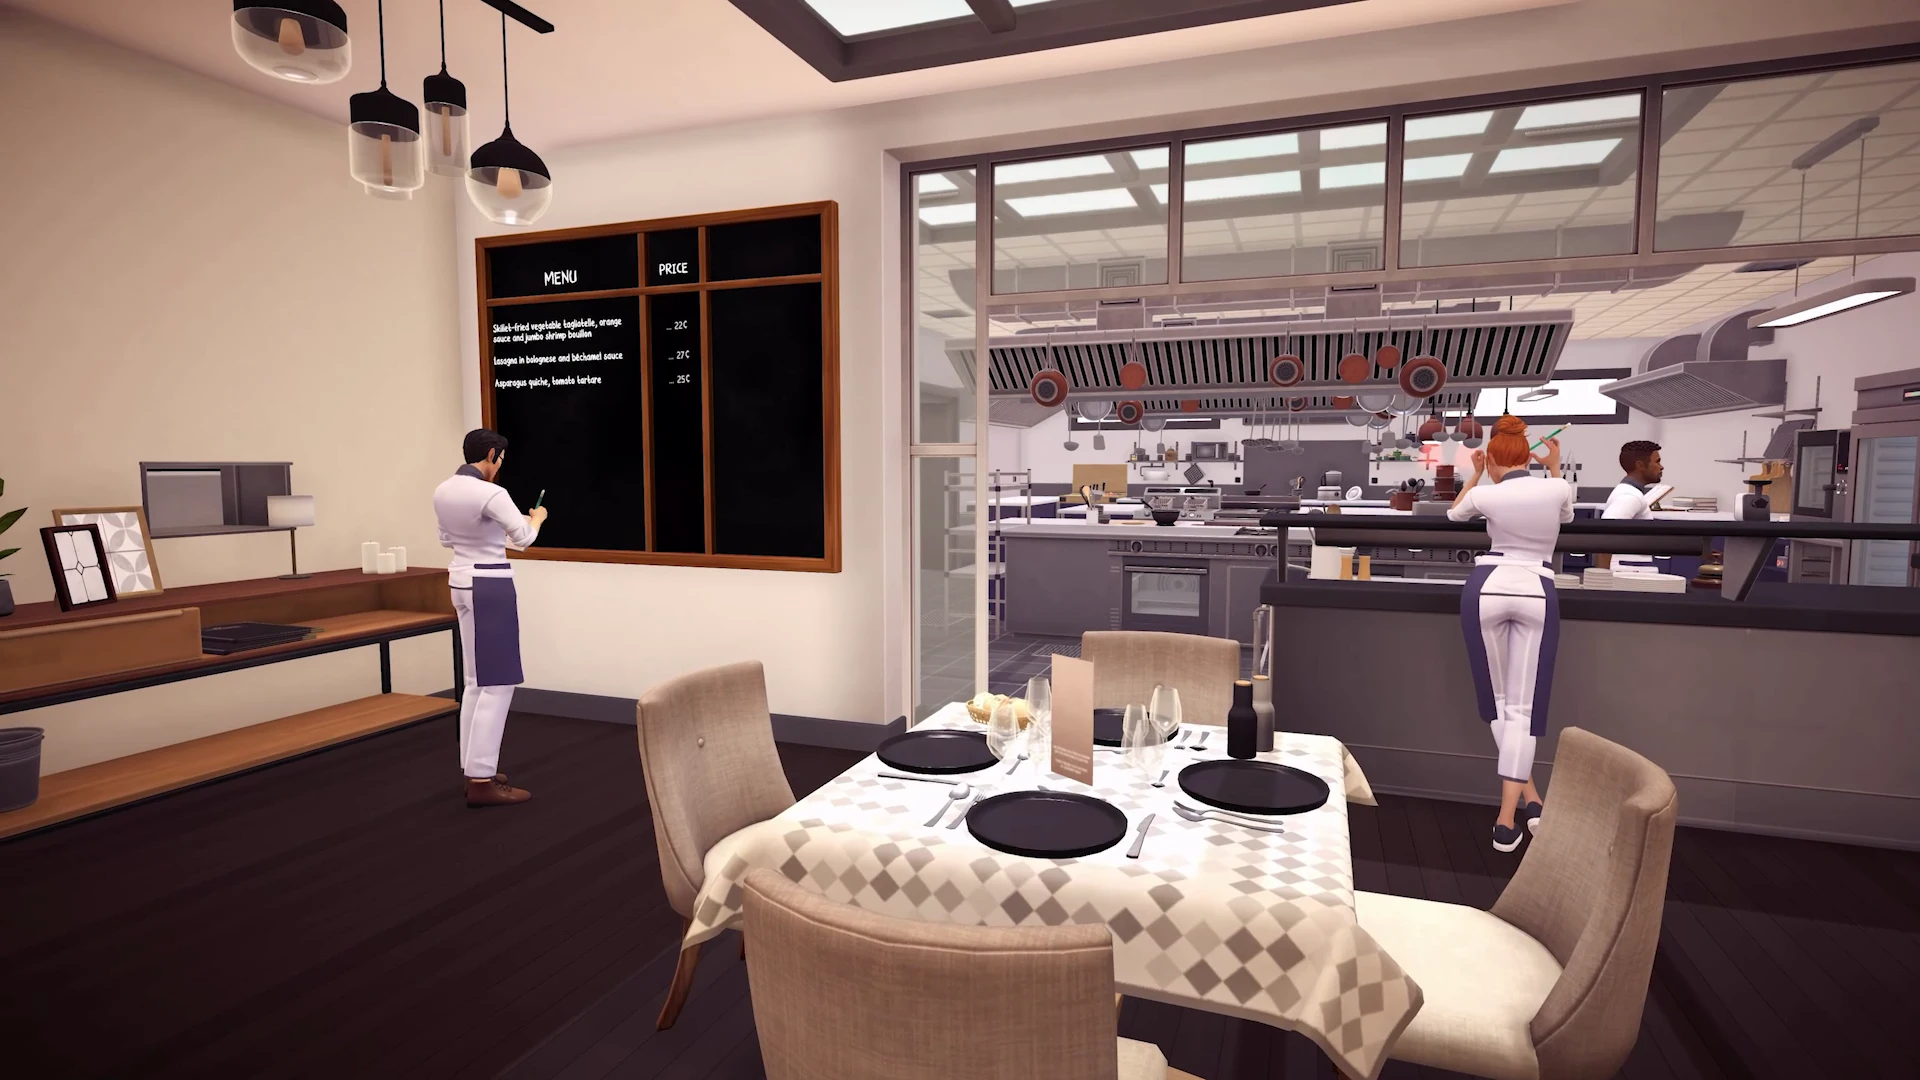 Chef Life - A Restaurant Simulator | Baixe e compre hoje - Epic Games Store